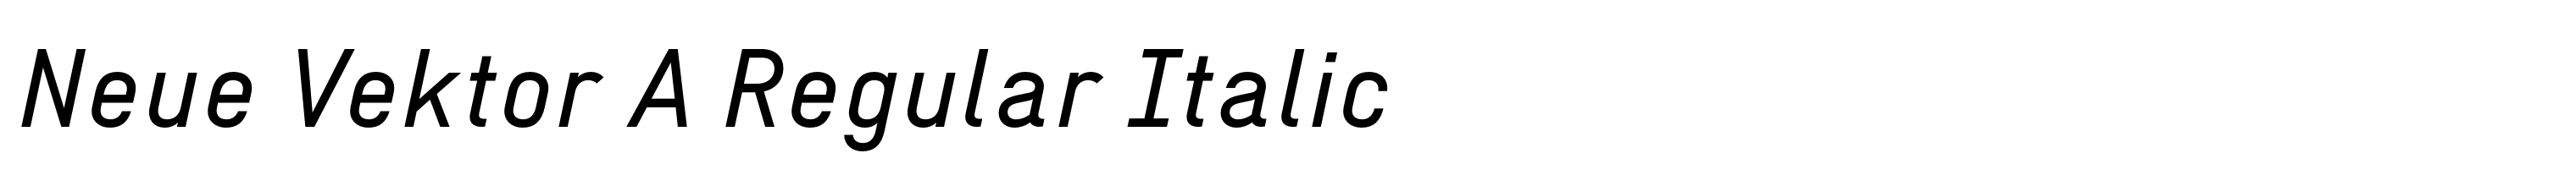 Neue Vektor A Regular Italic